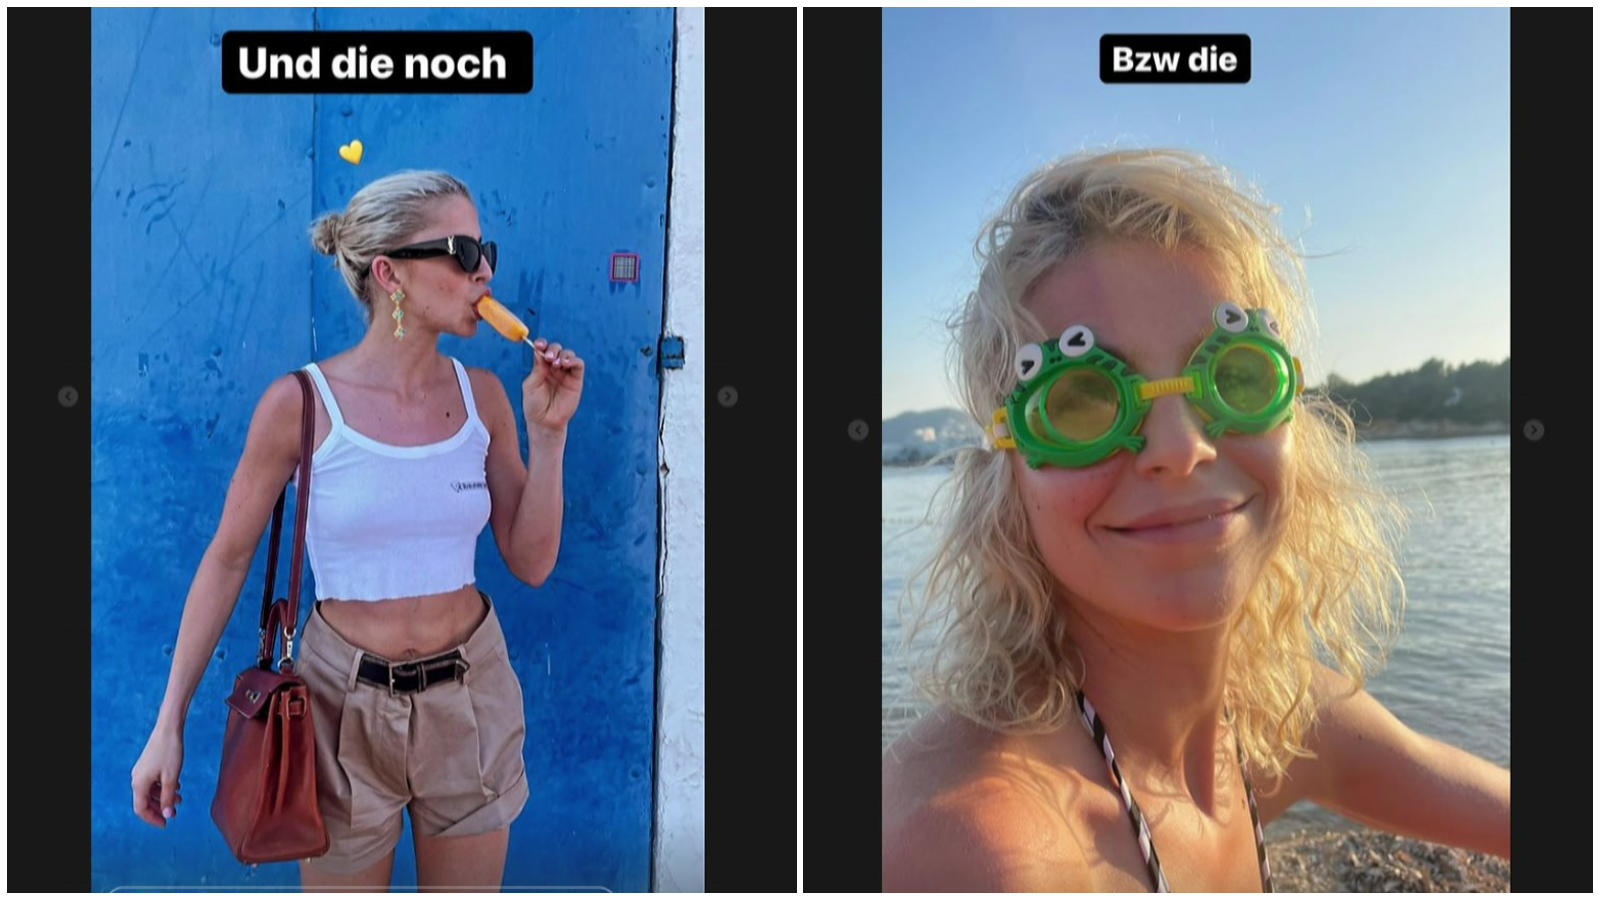 Tommi Schmitt teilt Urlaubsfotos von Freundin Caro Daur.